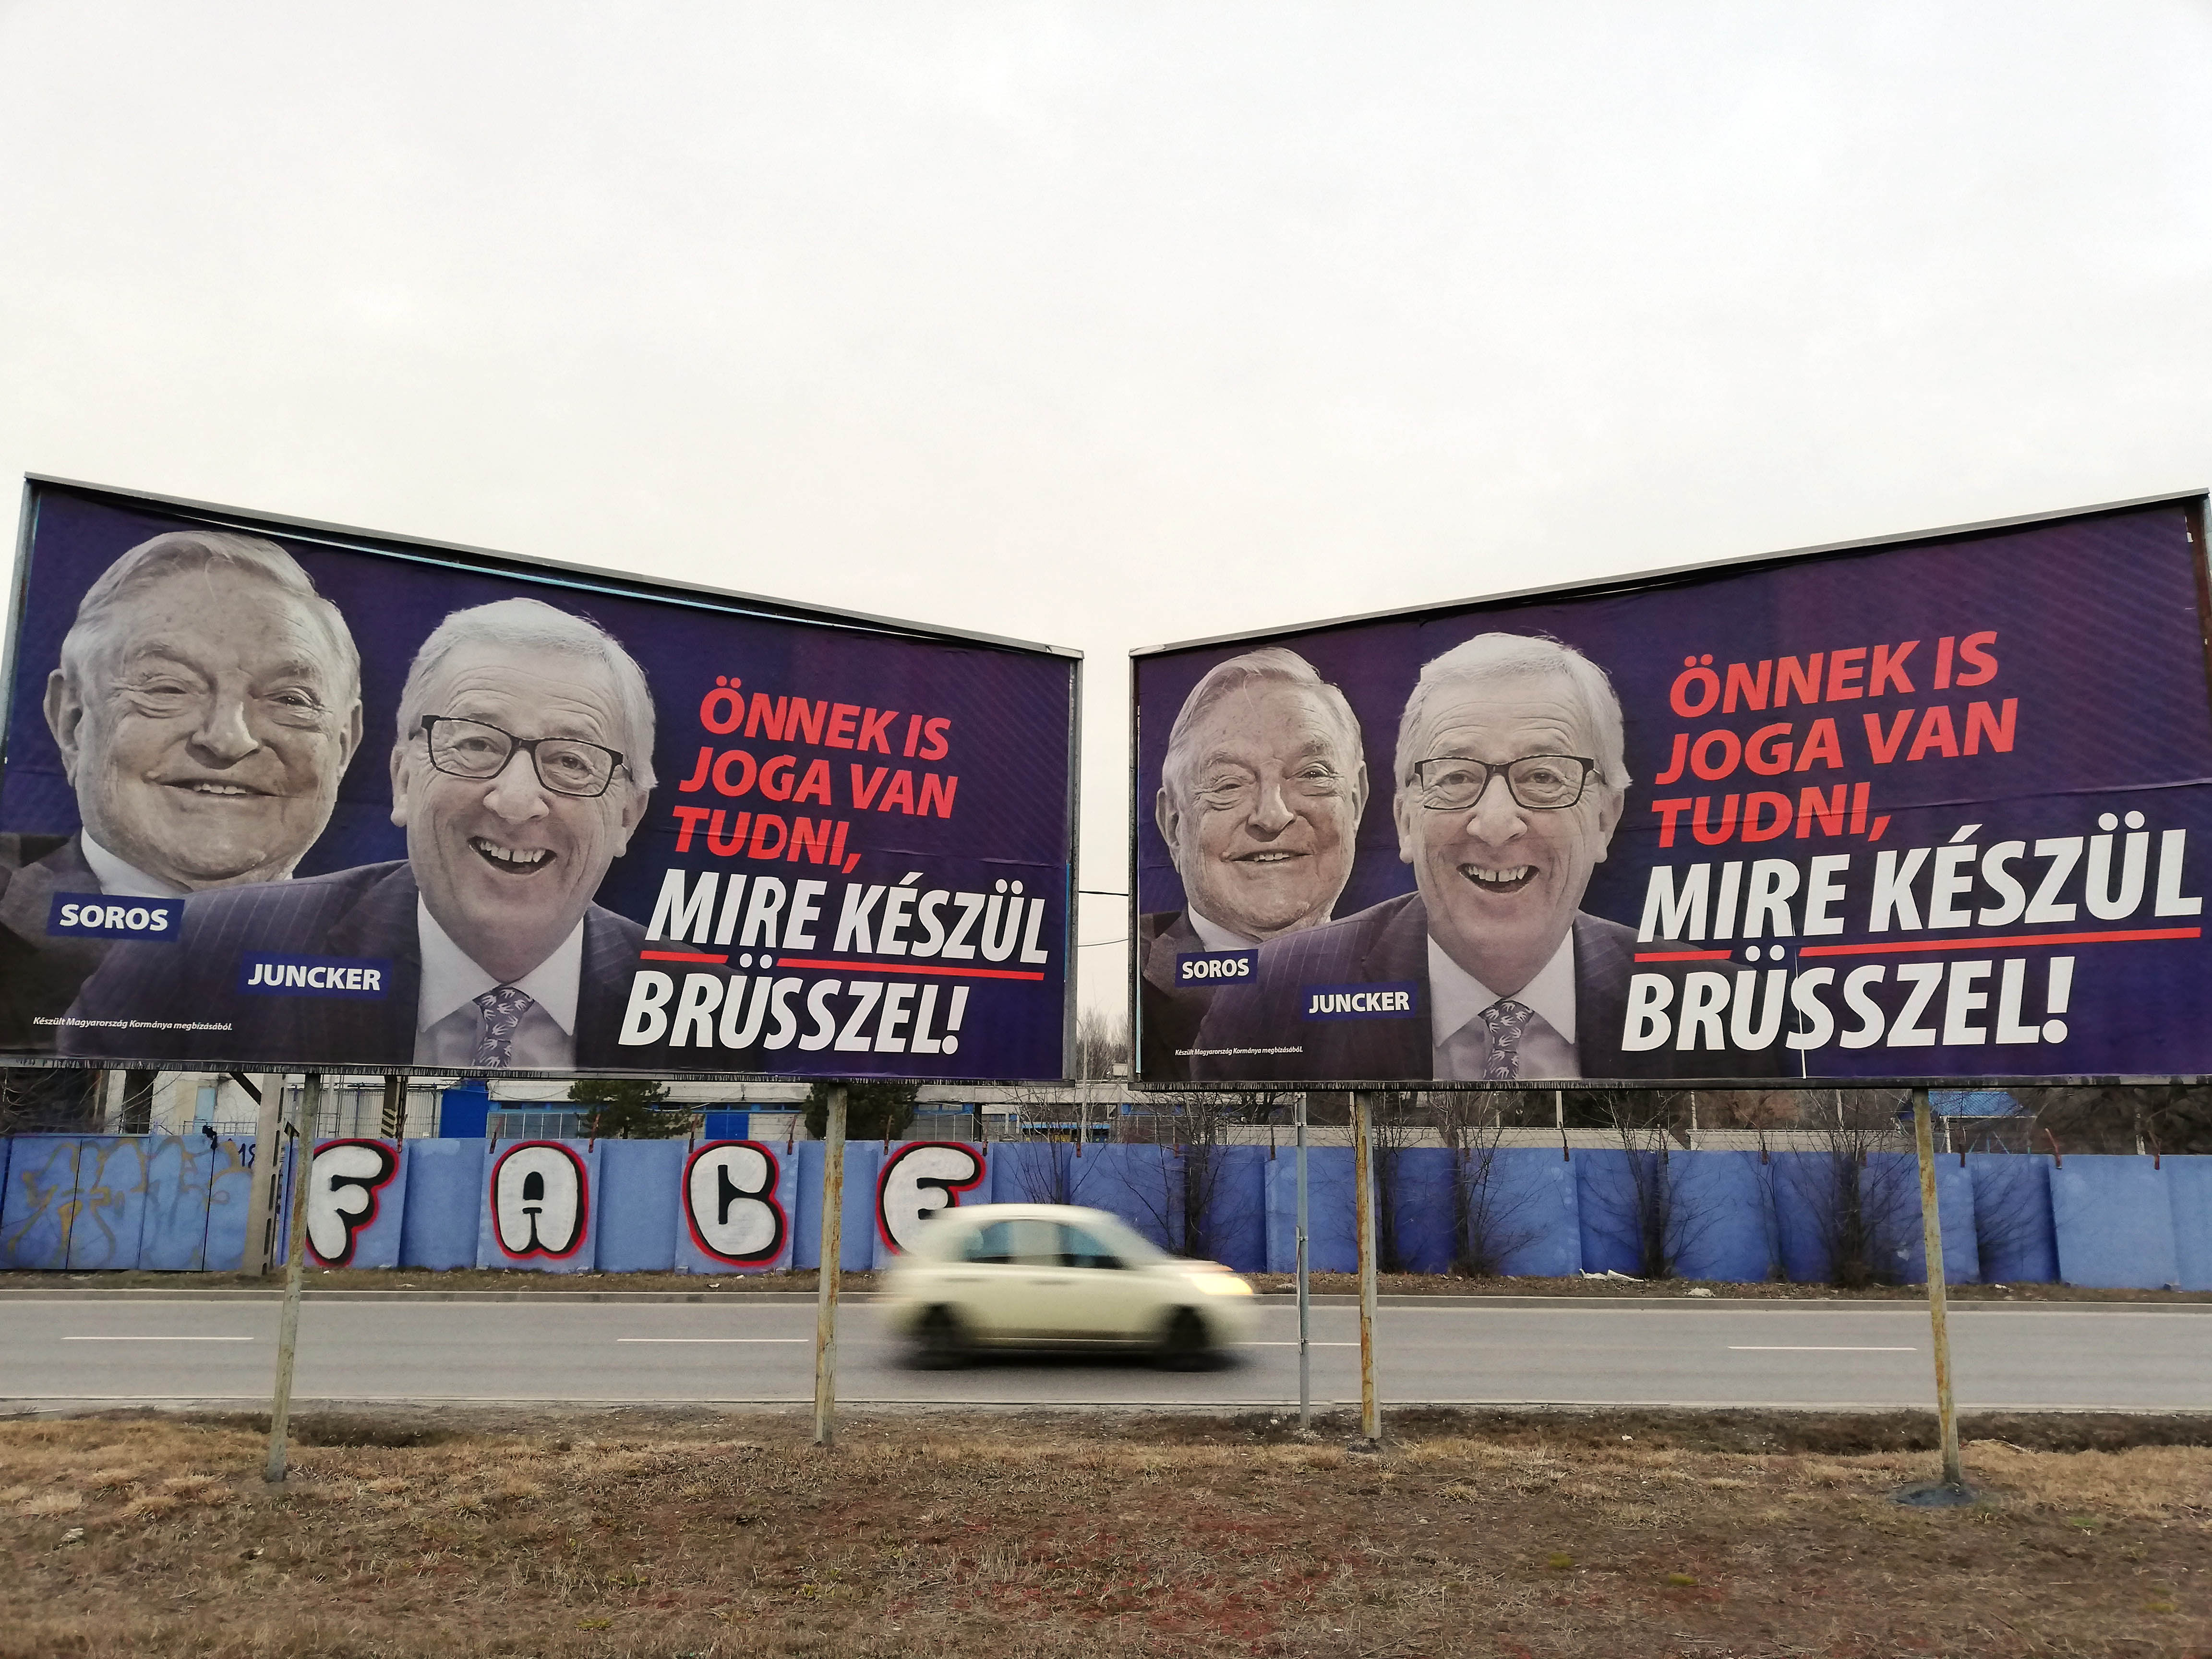 سوروس يونكر لوحات إعلانية في الاتحاد الأوروبي في المجر